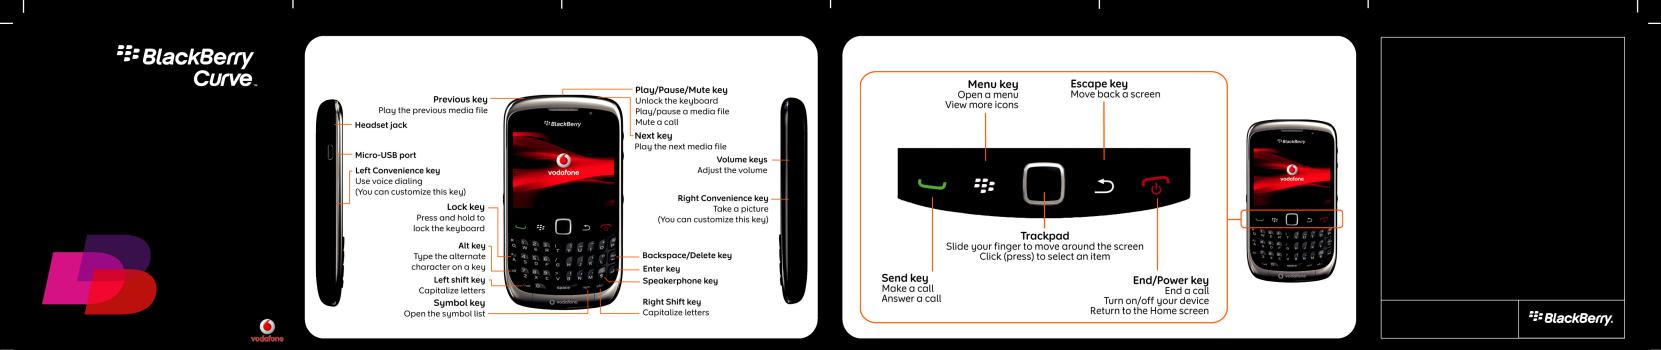 Blackberry 9300 START HERE User Manual